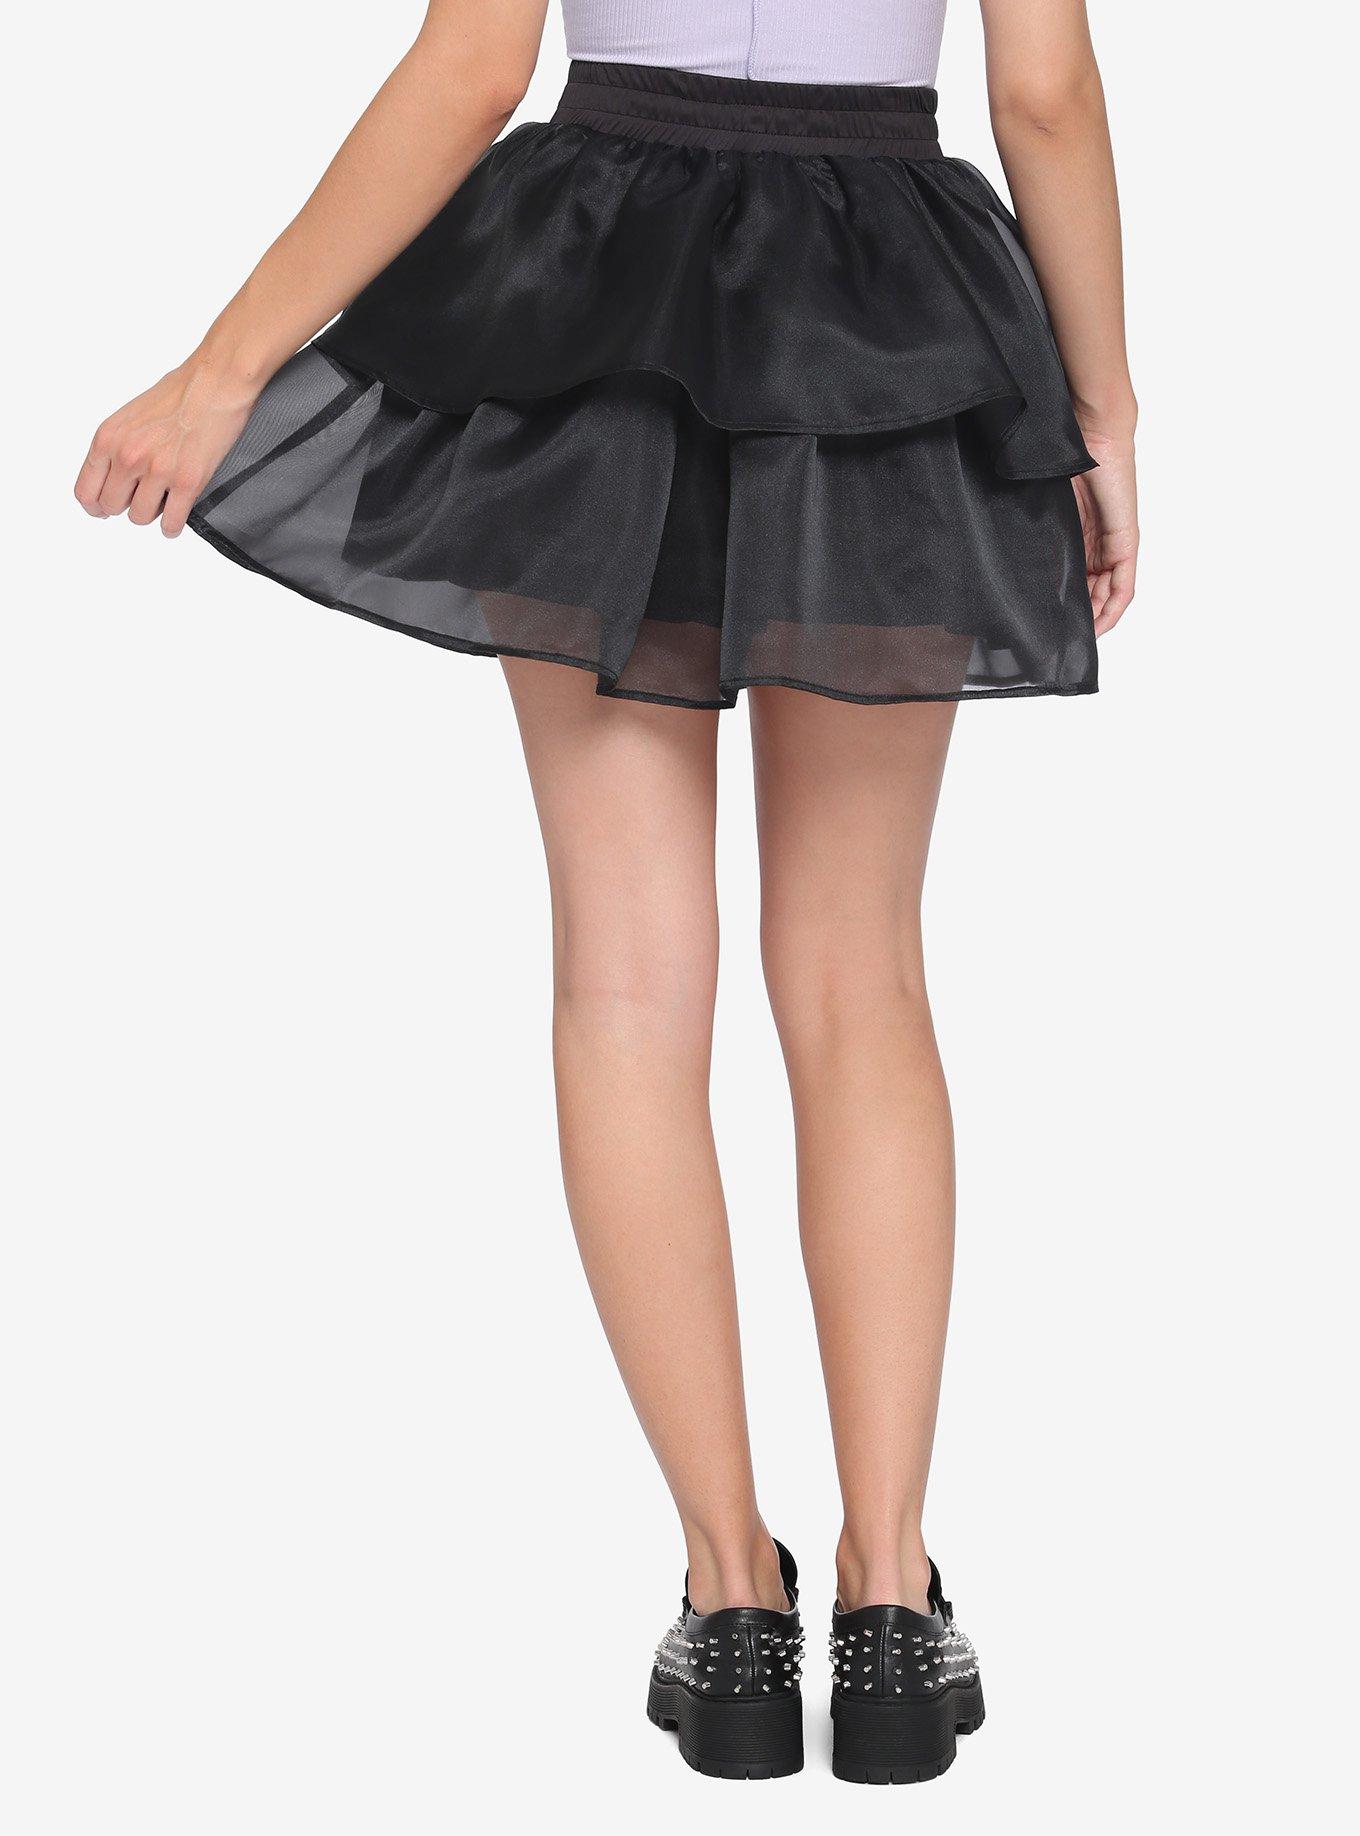 Black Tiered Sheer Skirt, BLACK, alternate